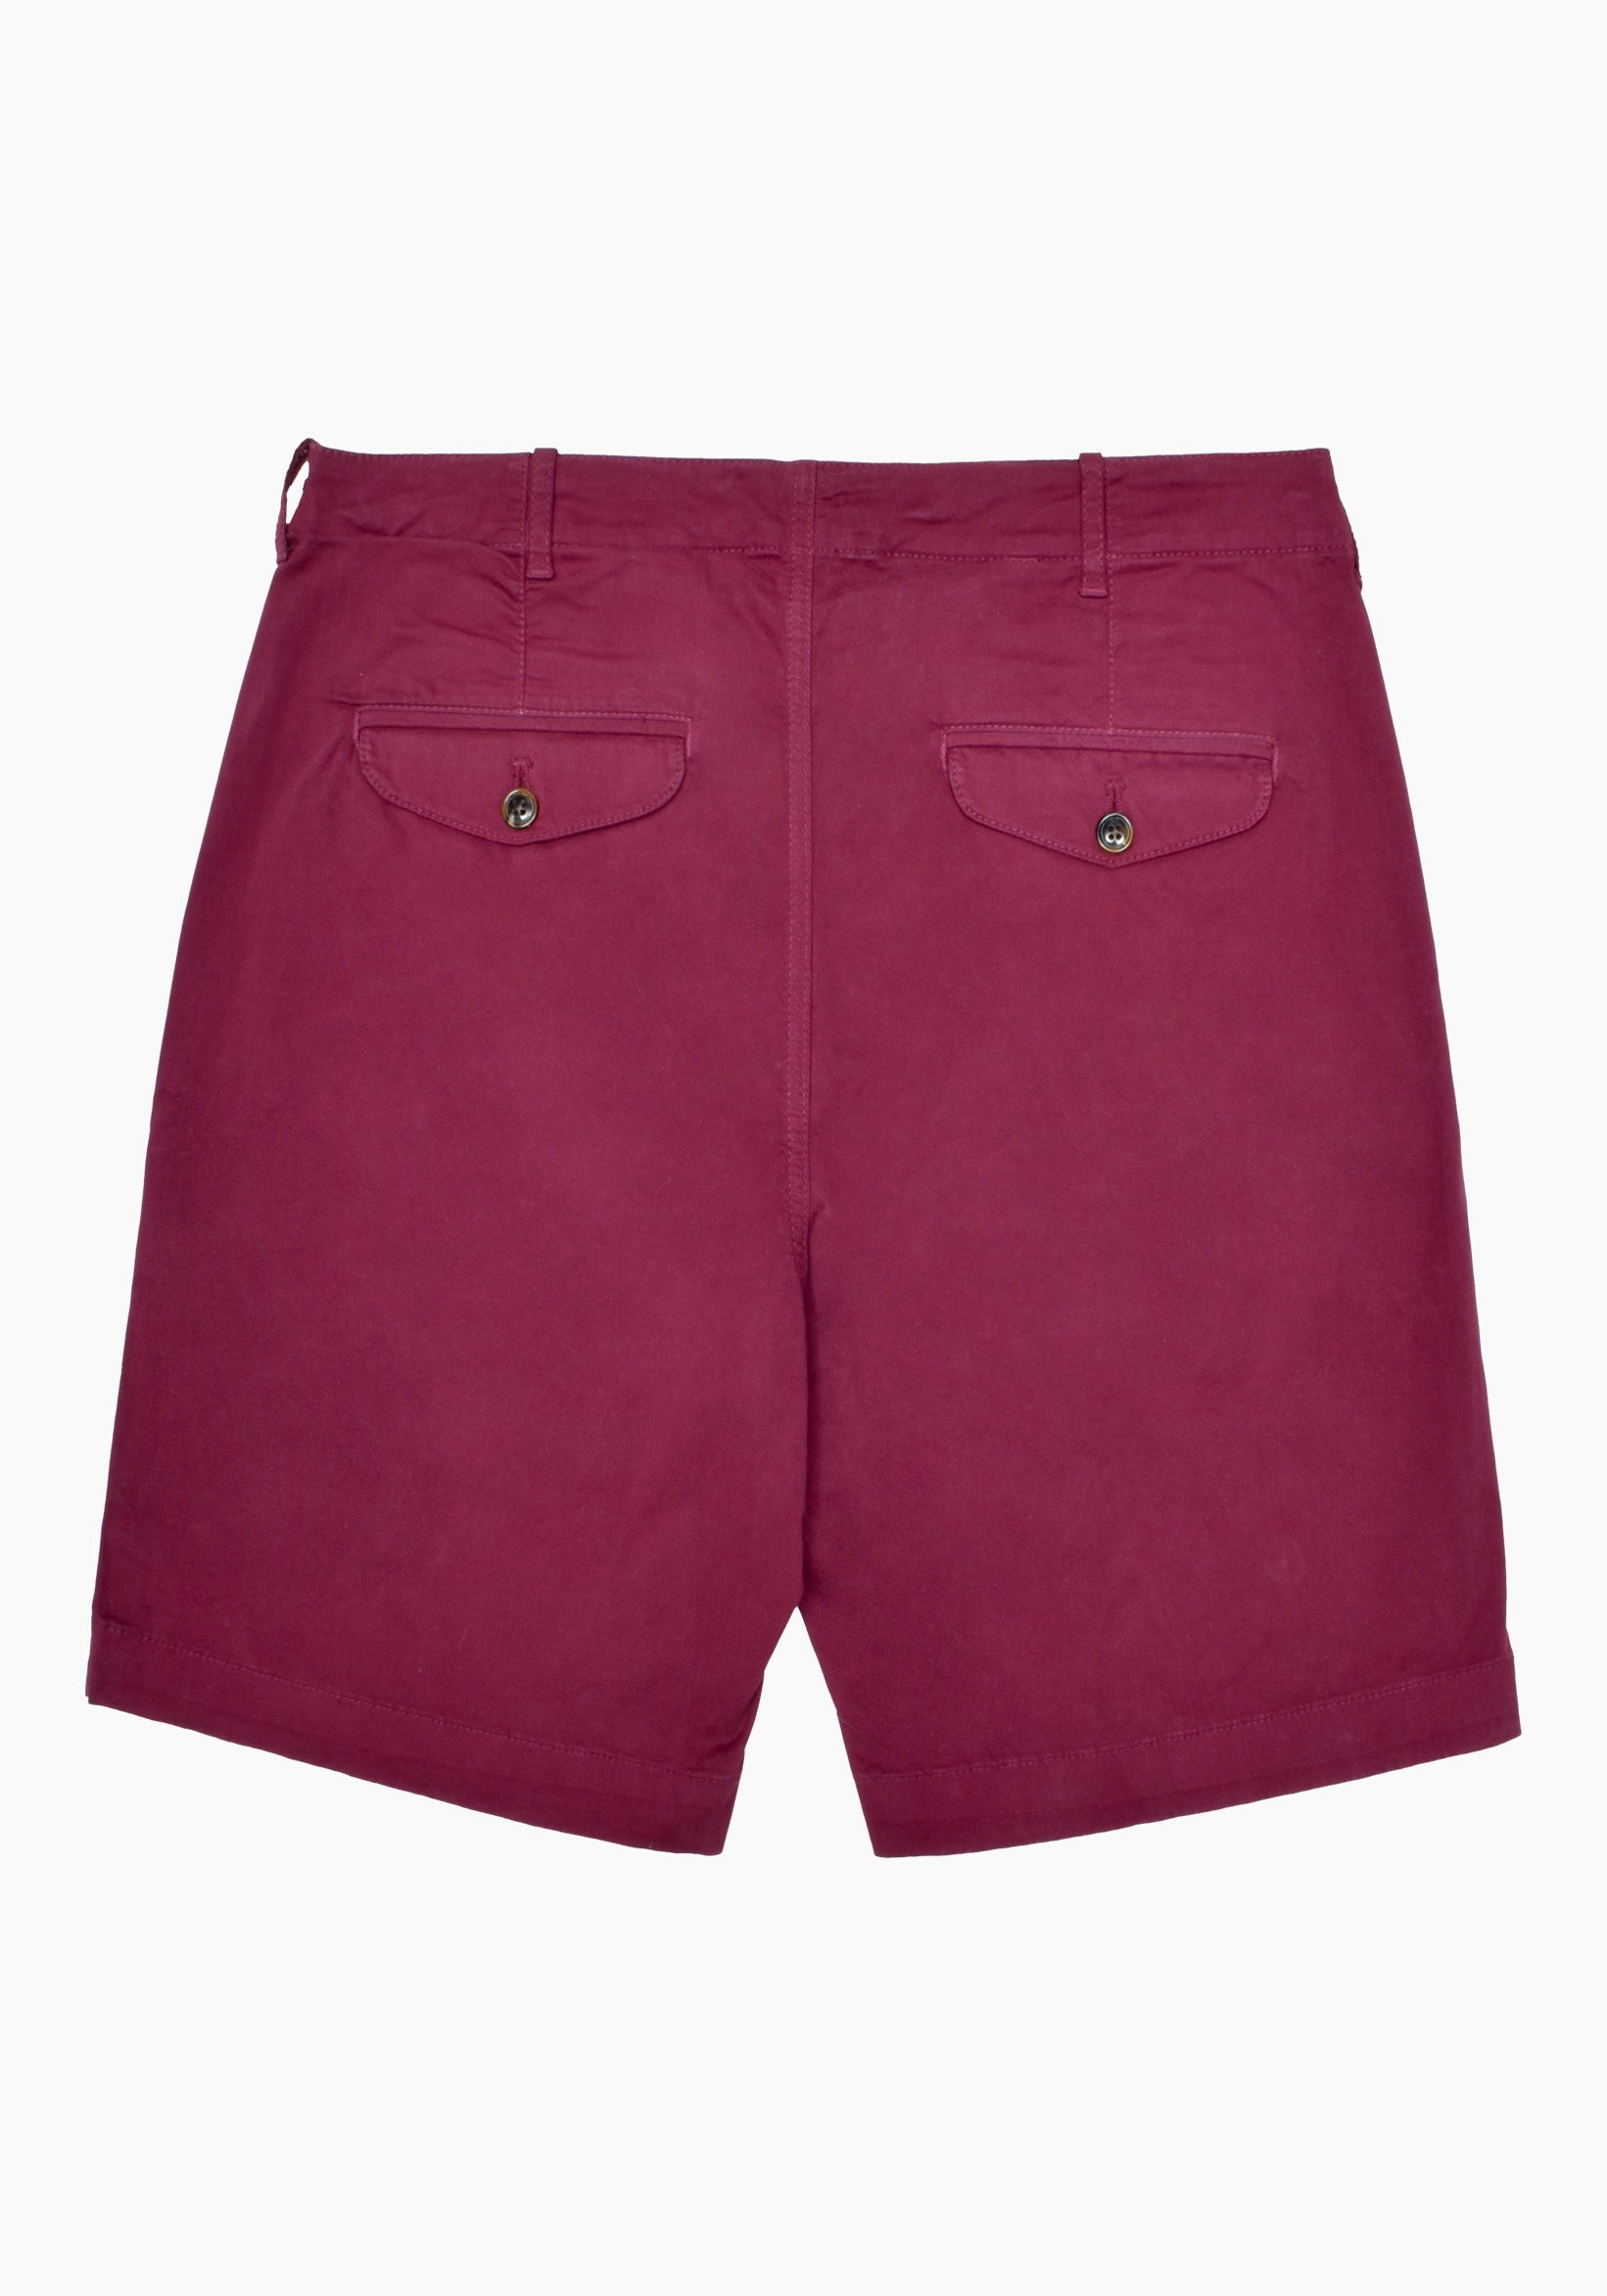 Bilbao Cherry Bermuda Shorts